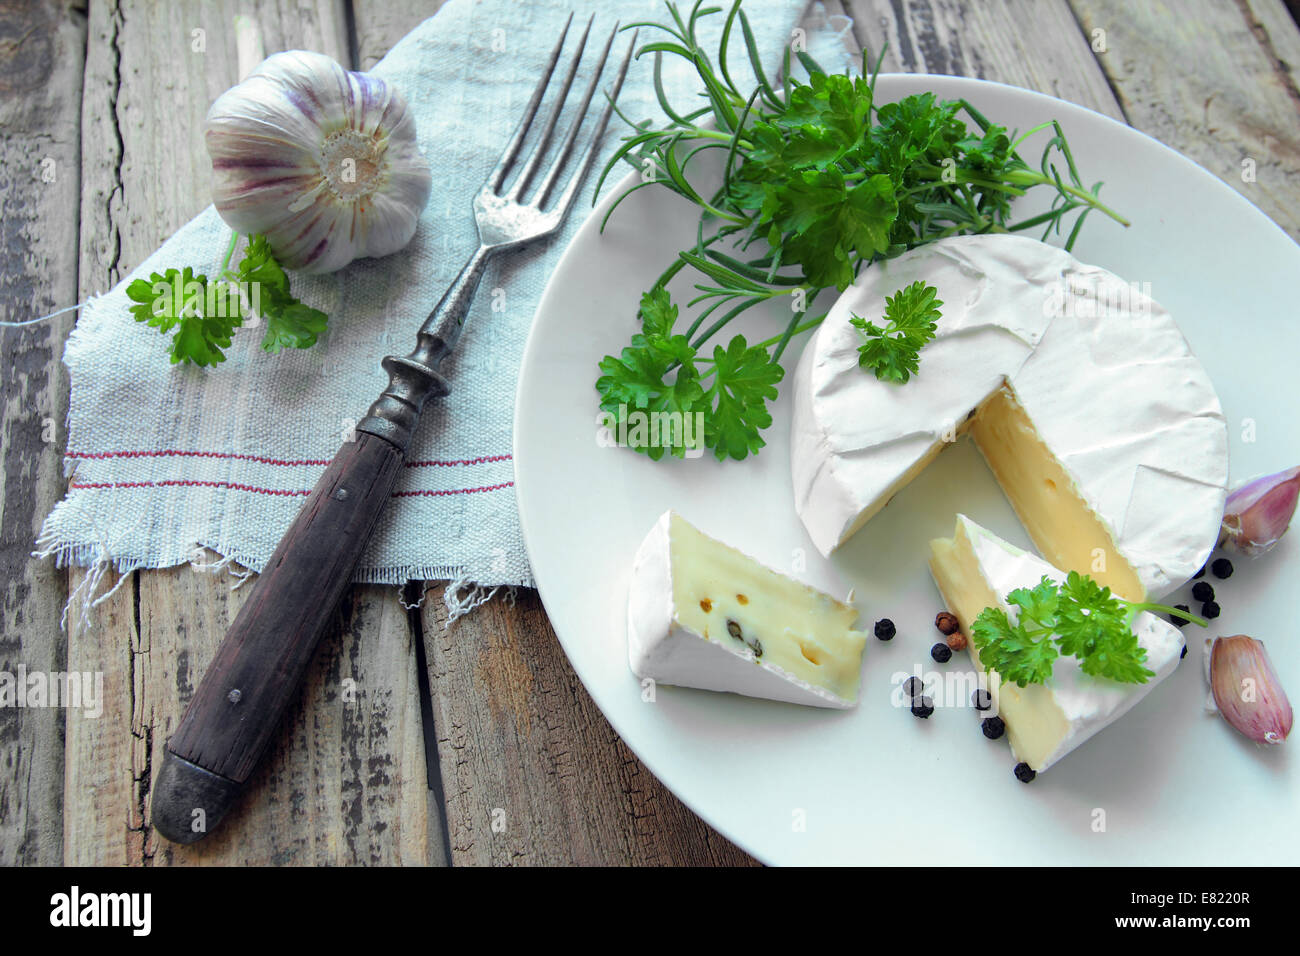 Fresco formaggio camembert con erbe su una piastra bianca con forca Foto Stock